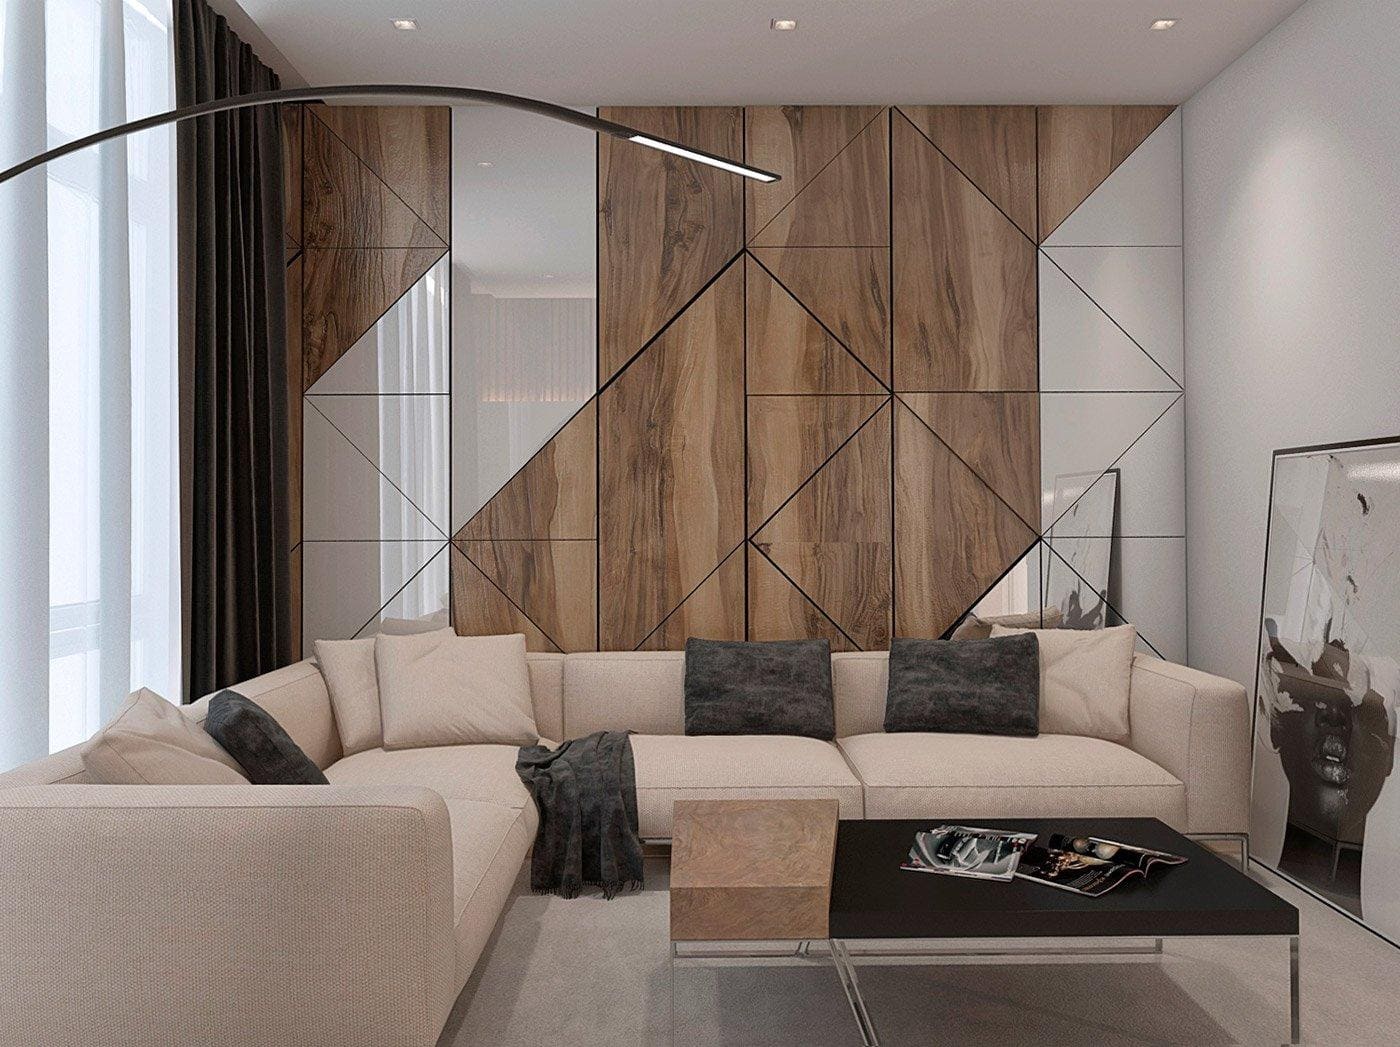 Дизайн интерьера для маленькой квартиры с мебелью